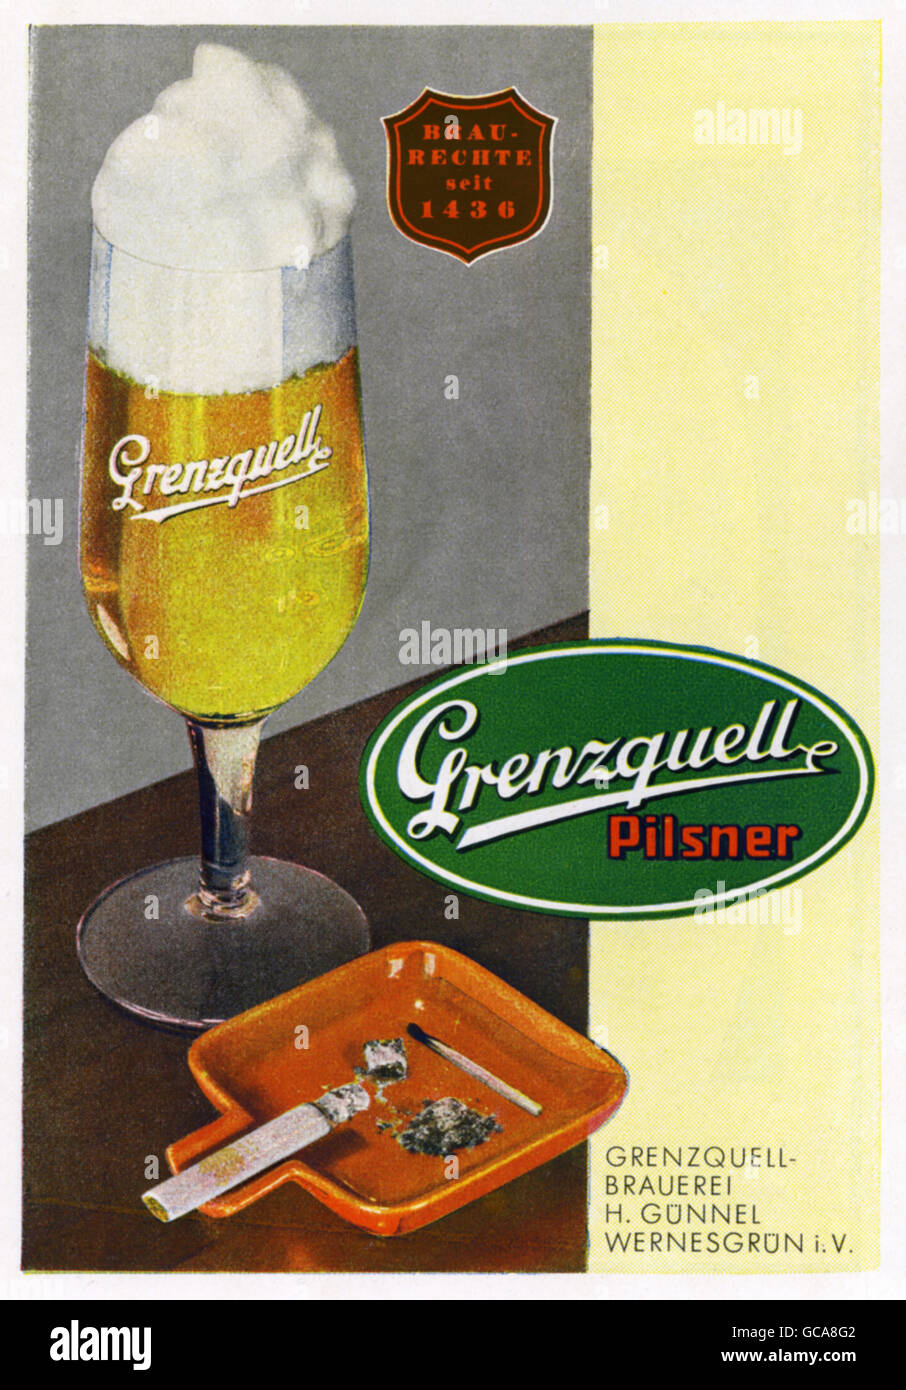 Werbung, Alkohol, Bier, Grenzquell Pilsner, Grenzquell Brauerei, H. Guennel, Wernesgruen, Werbung, Deutschland, 1942, Additional-Rights-Clearences-not available Stockfoto